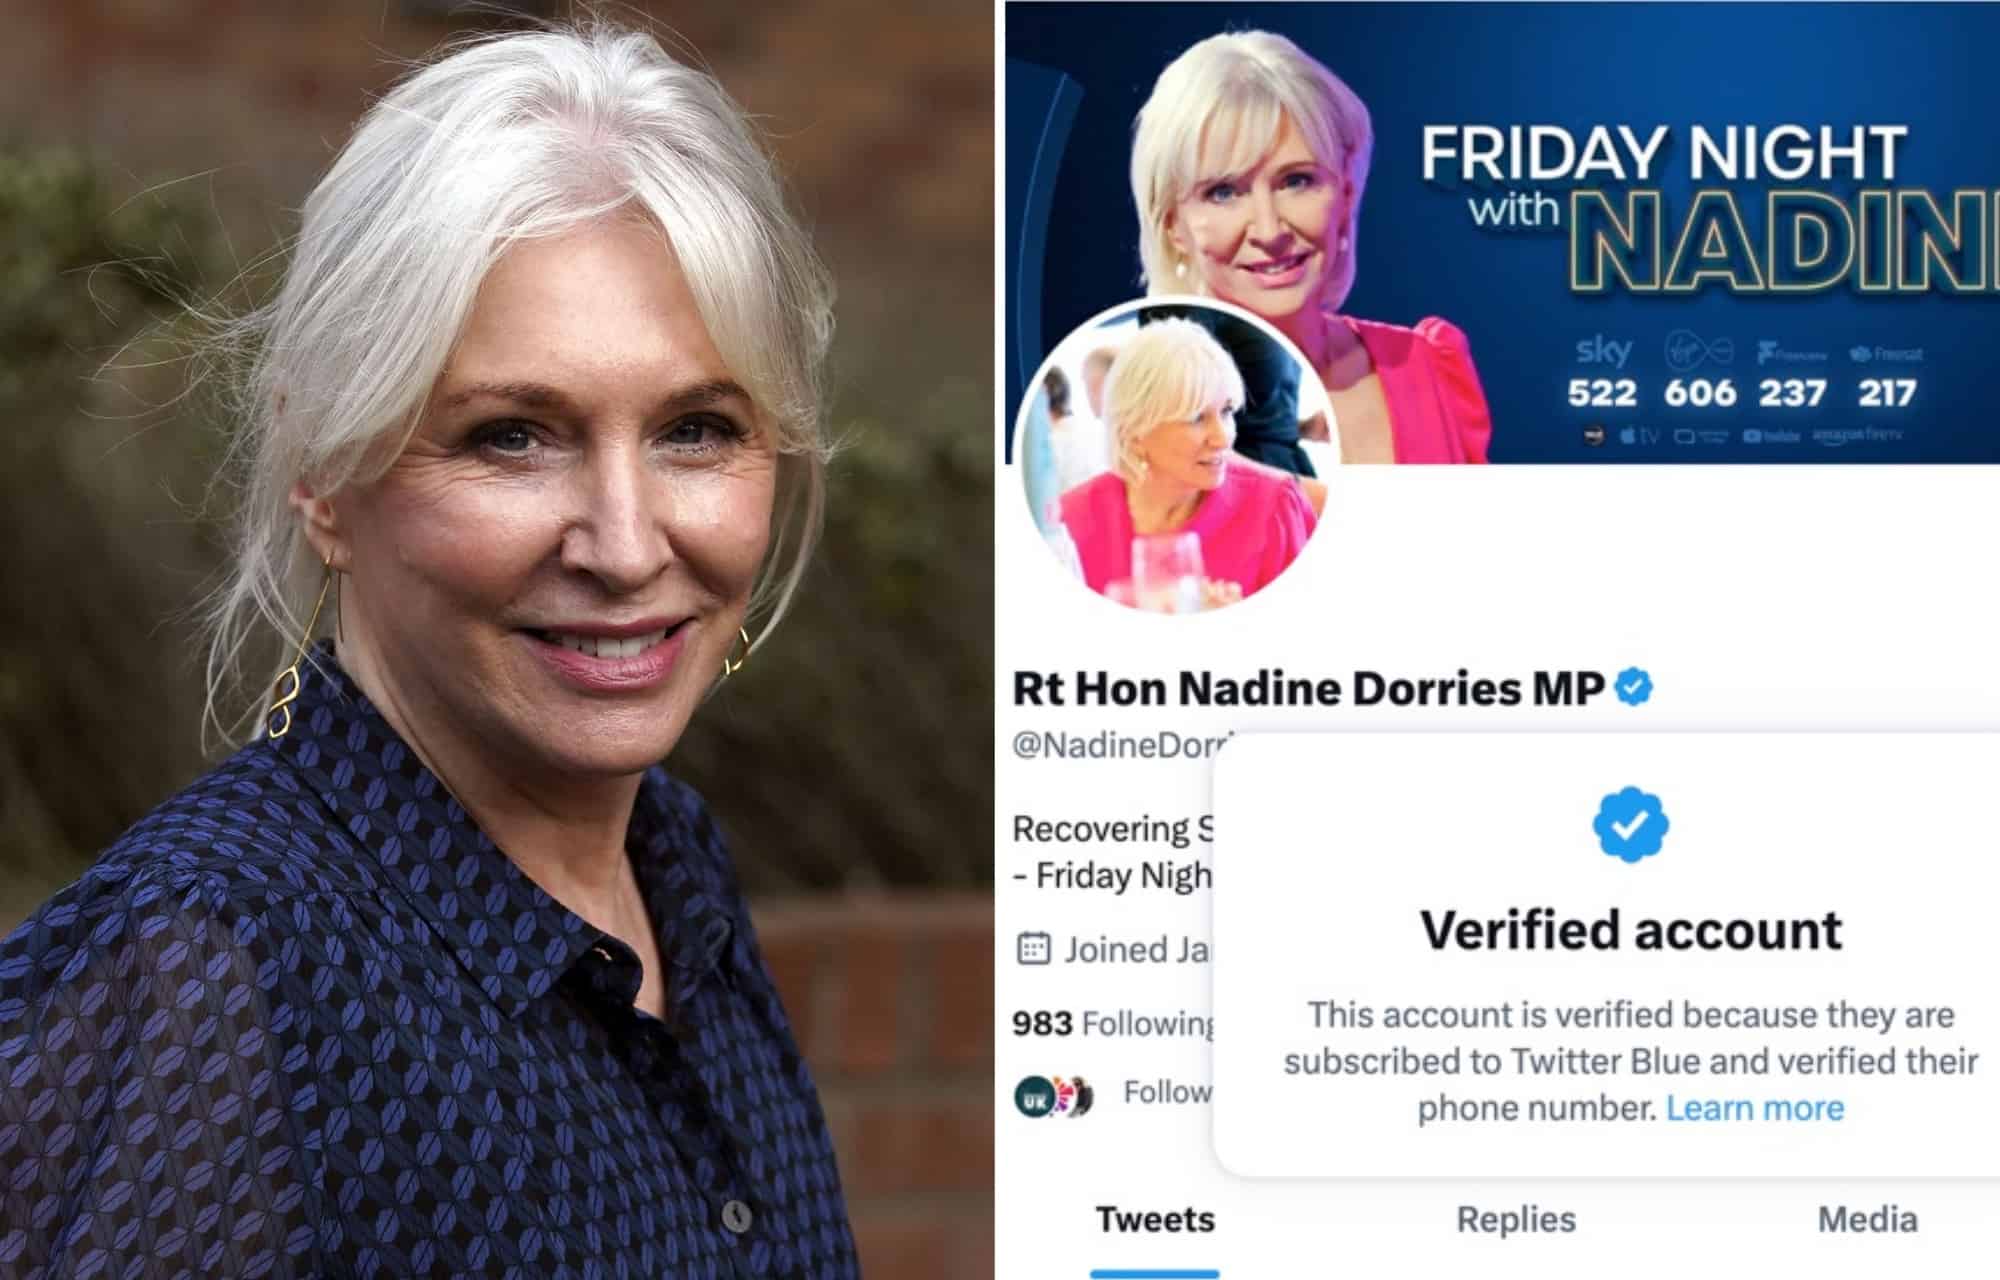 Nadine Dorries pays for Twitter Blue as Matt Hancock has verification turned off